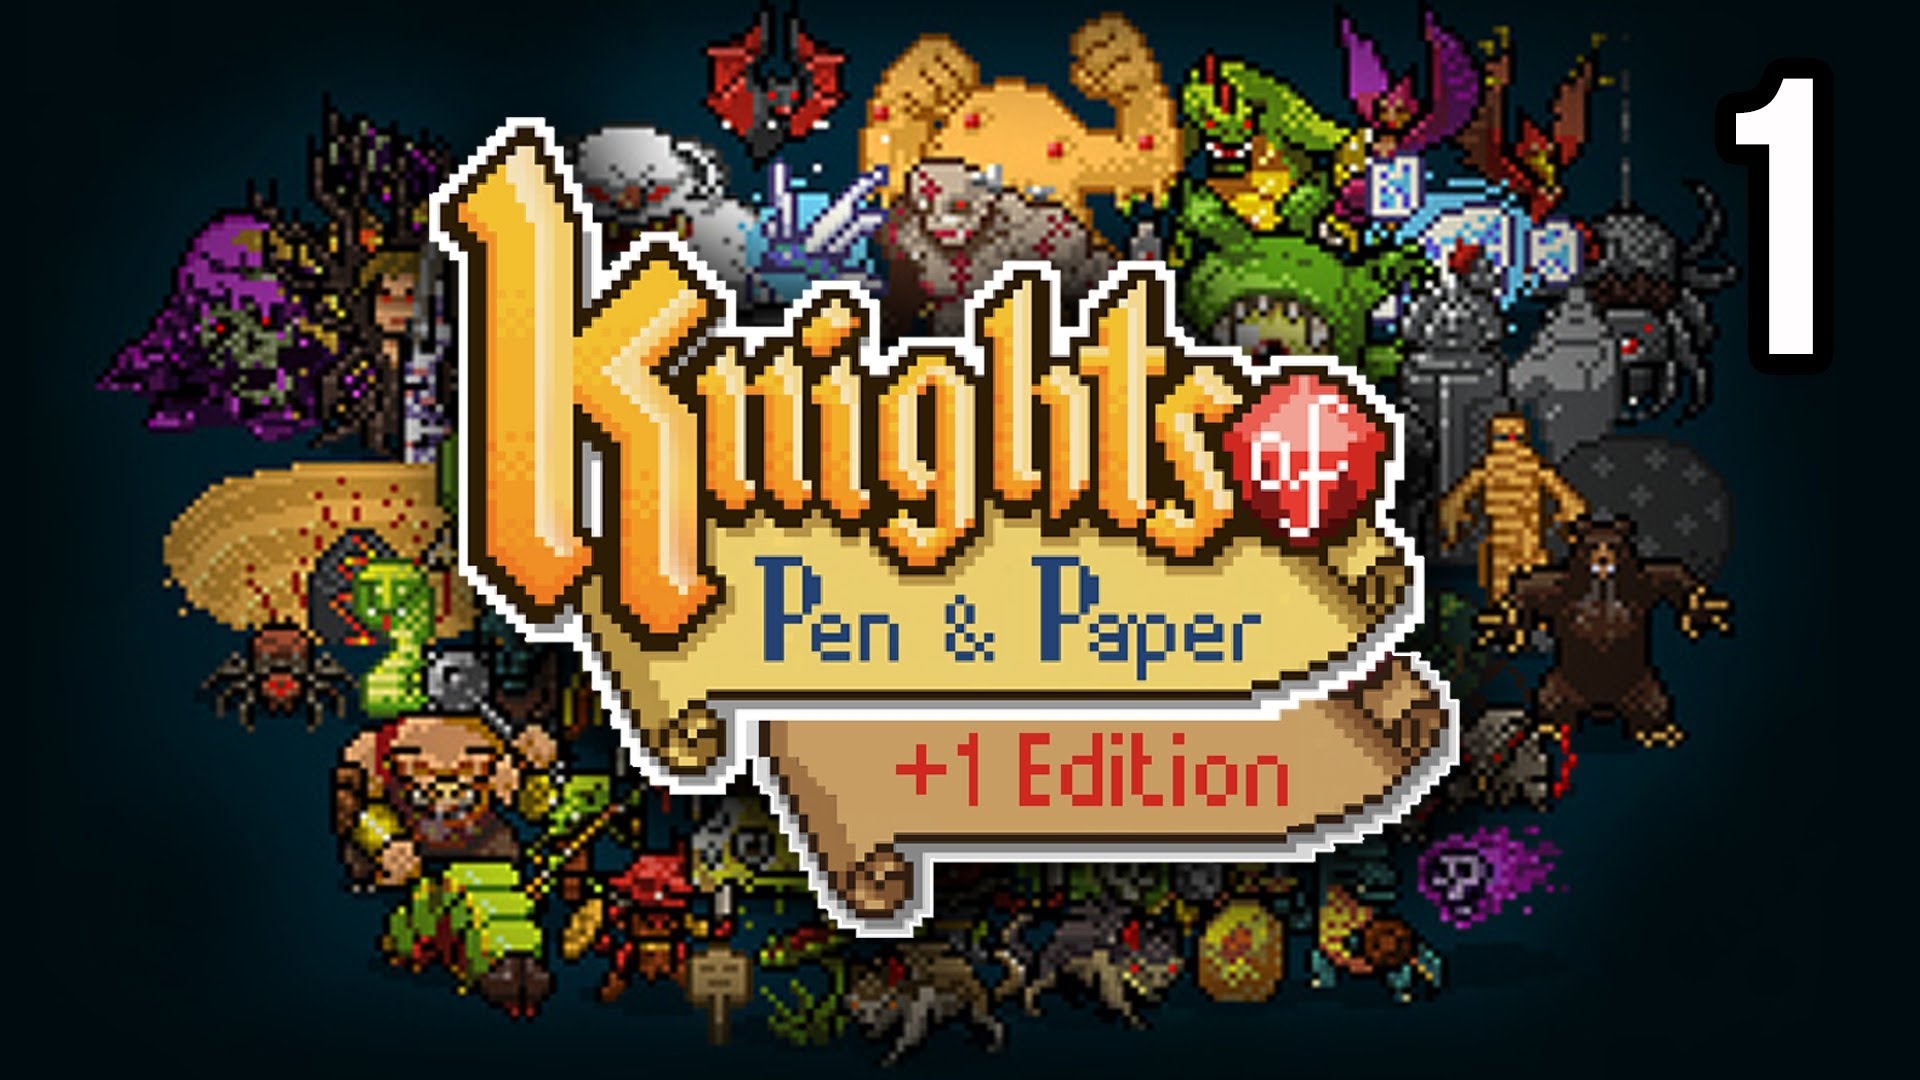 Knights of Pen and Paper +1 giảm giá chỉ còn nửa trong thời gian giới hạn